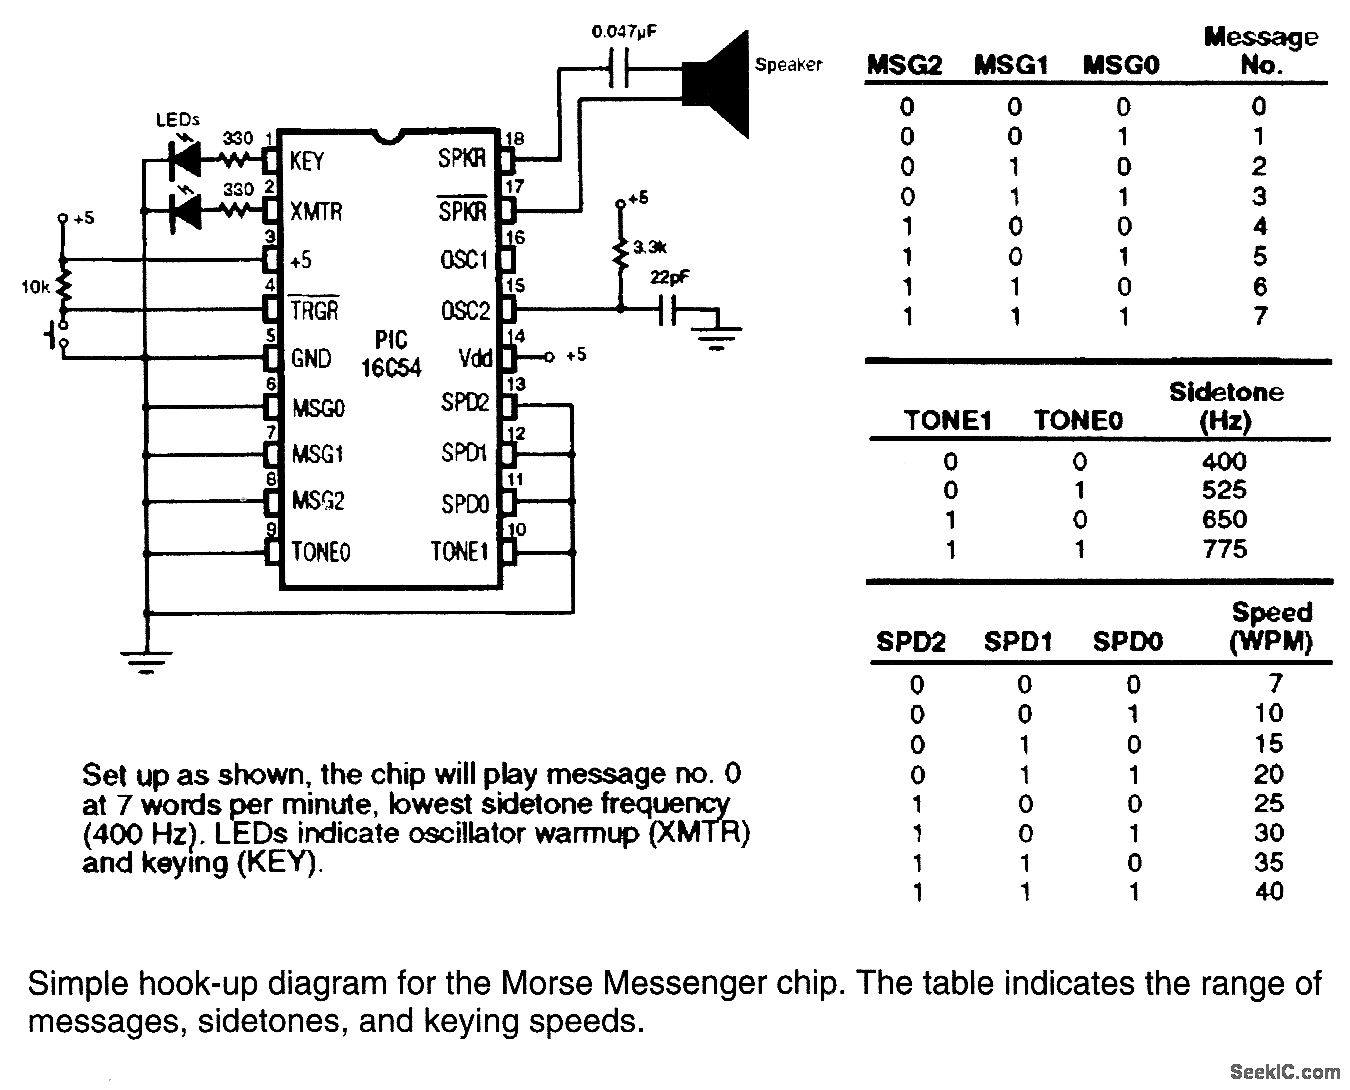 Morse conversion code